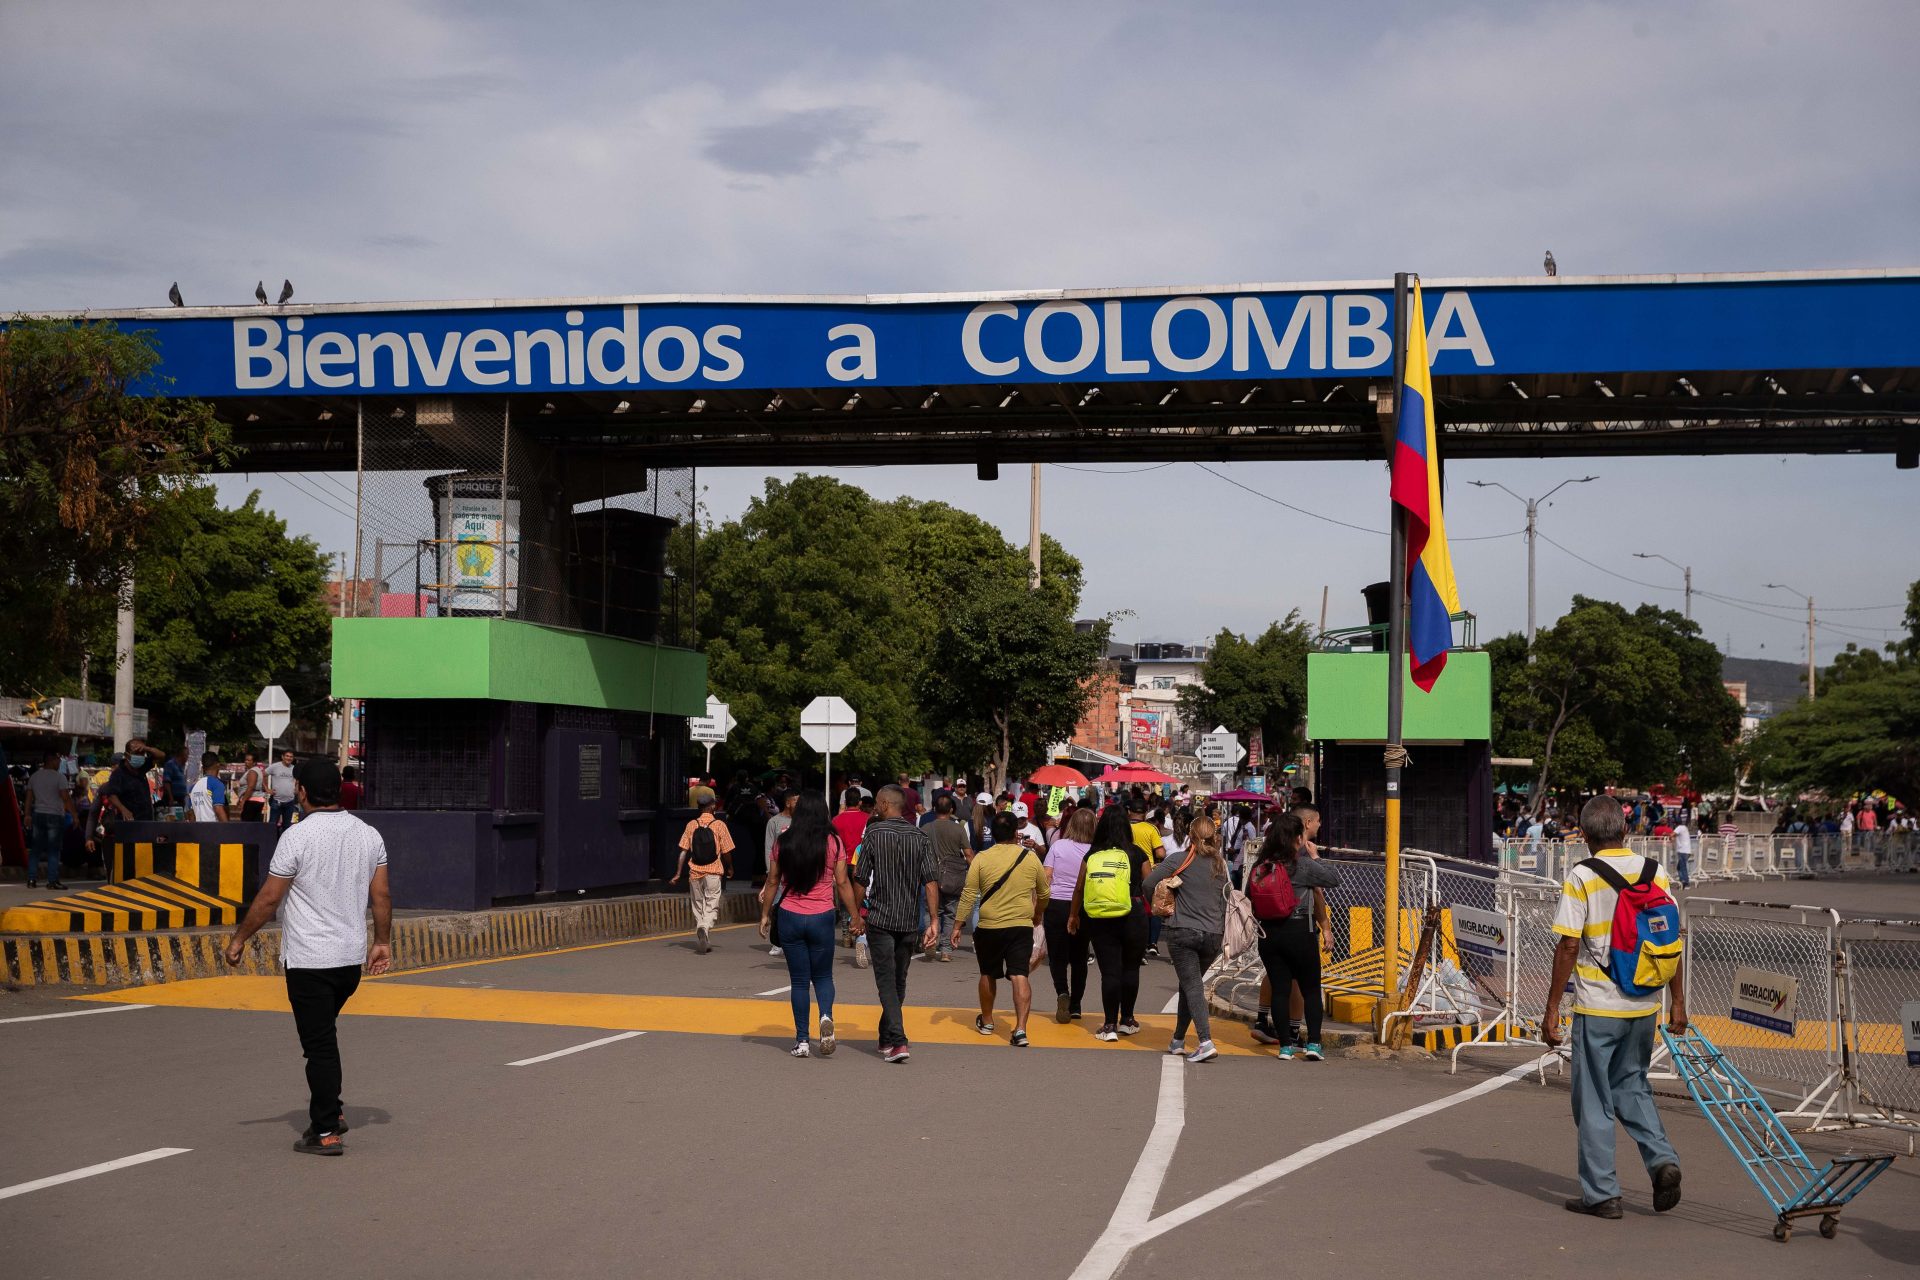 El dia despues de la apertura en la frontera colombo-venezolana